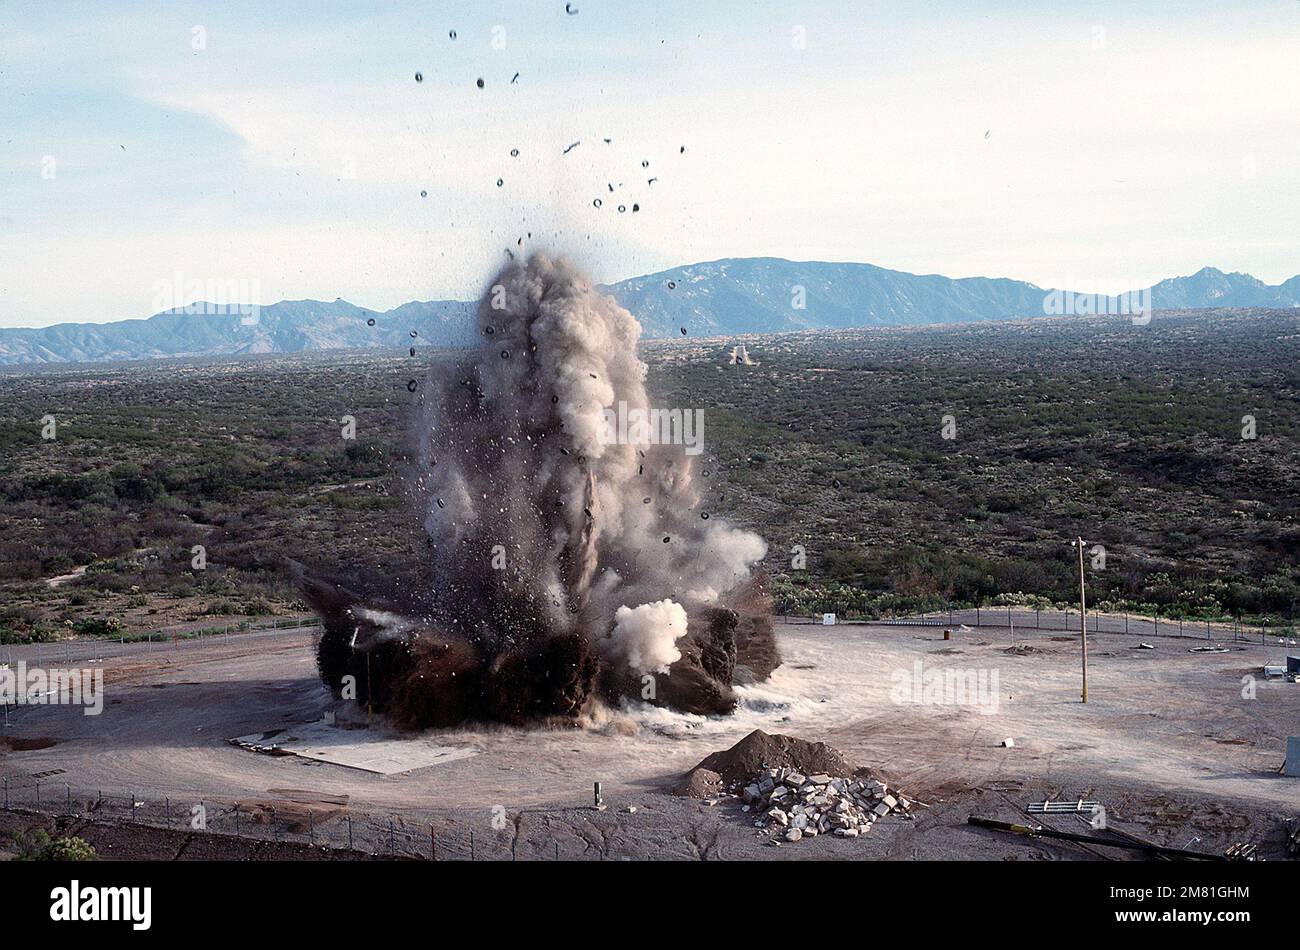 Una vista aerea di un silo missilistico Titan II che viene fatto esplodare da esperti di demolizione in conformità con il trattato strategico sulla limitazione delle armi (SALT II). Soggetto operativo/Serie: SALT II base: Davis-Monthan Air Force base Stato: Arizona (AZ) Paese: Stati Uniti d'America (USA) Foto Stock